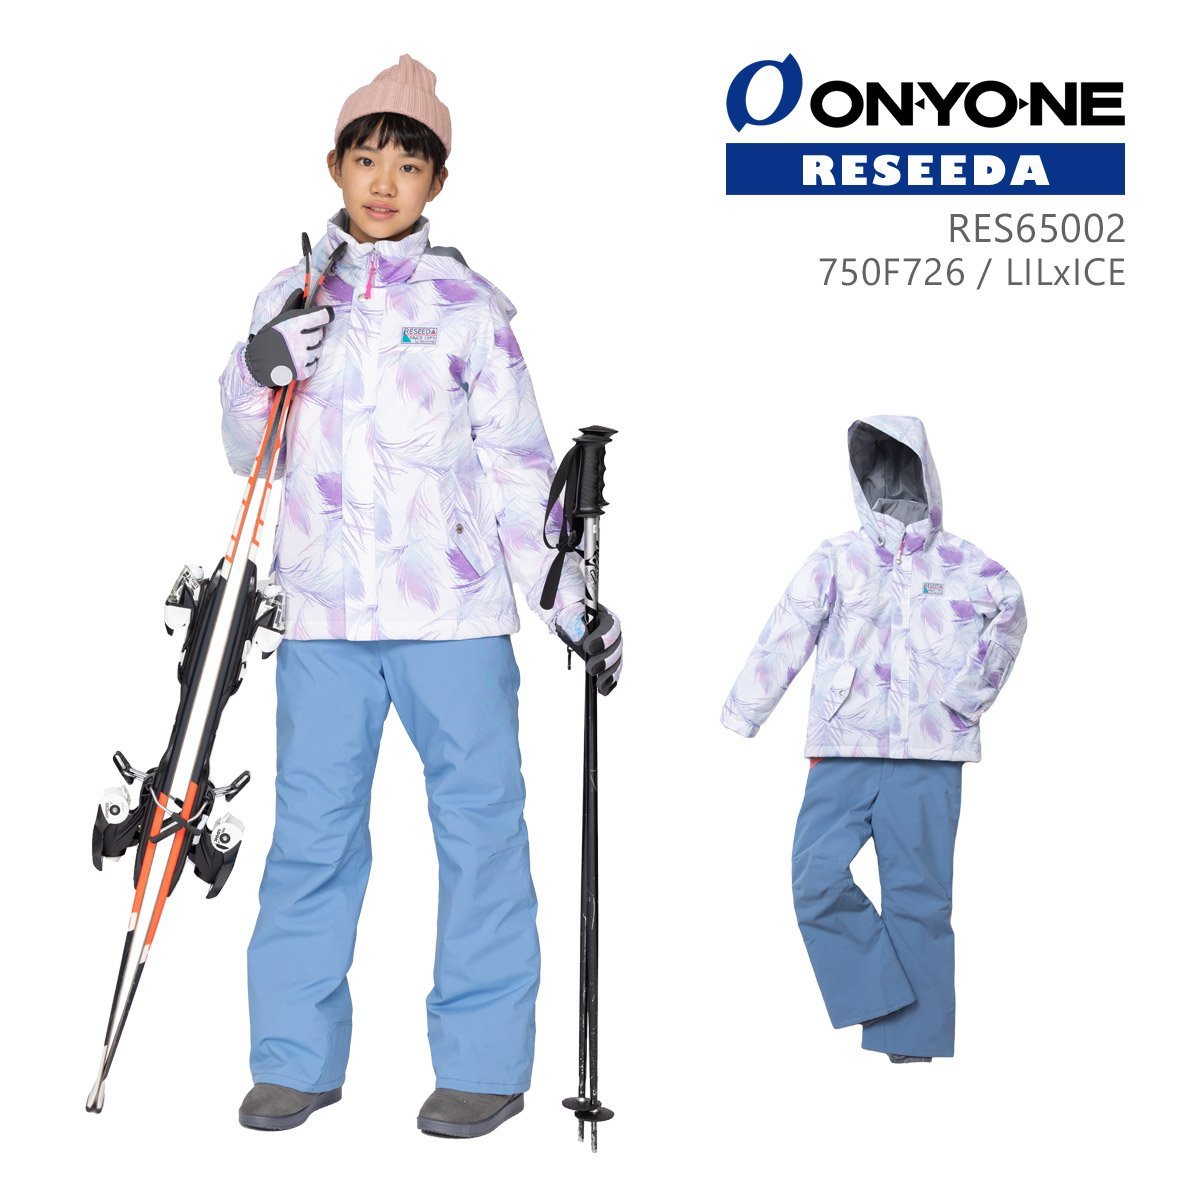 1430332-ONYONE/JUNIOR SUIT ジュニア スキーウェア 上下セット 子供用 スノースーツ/16